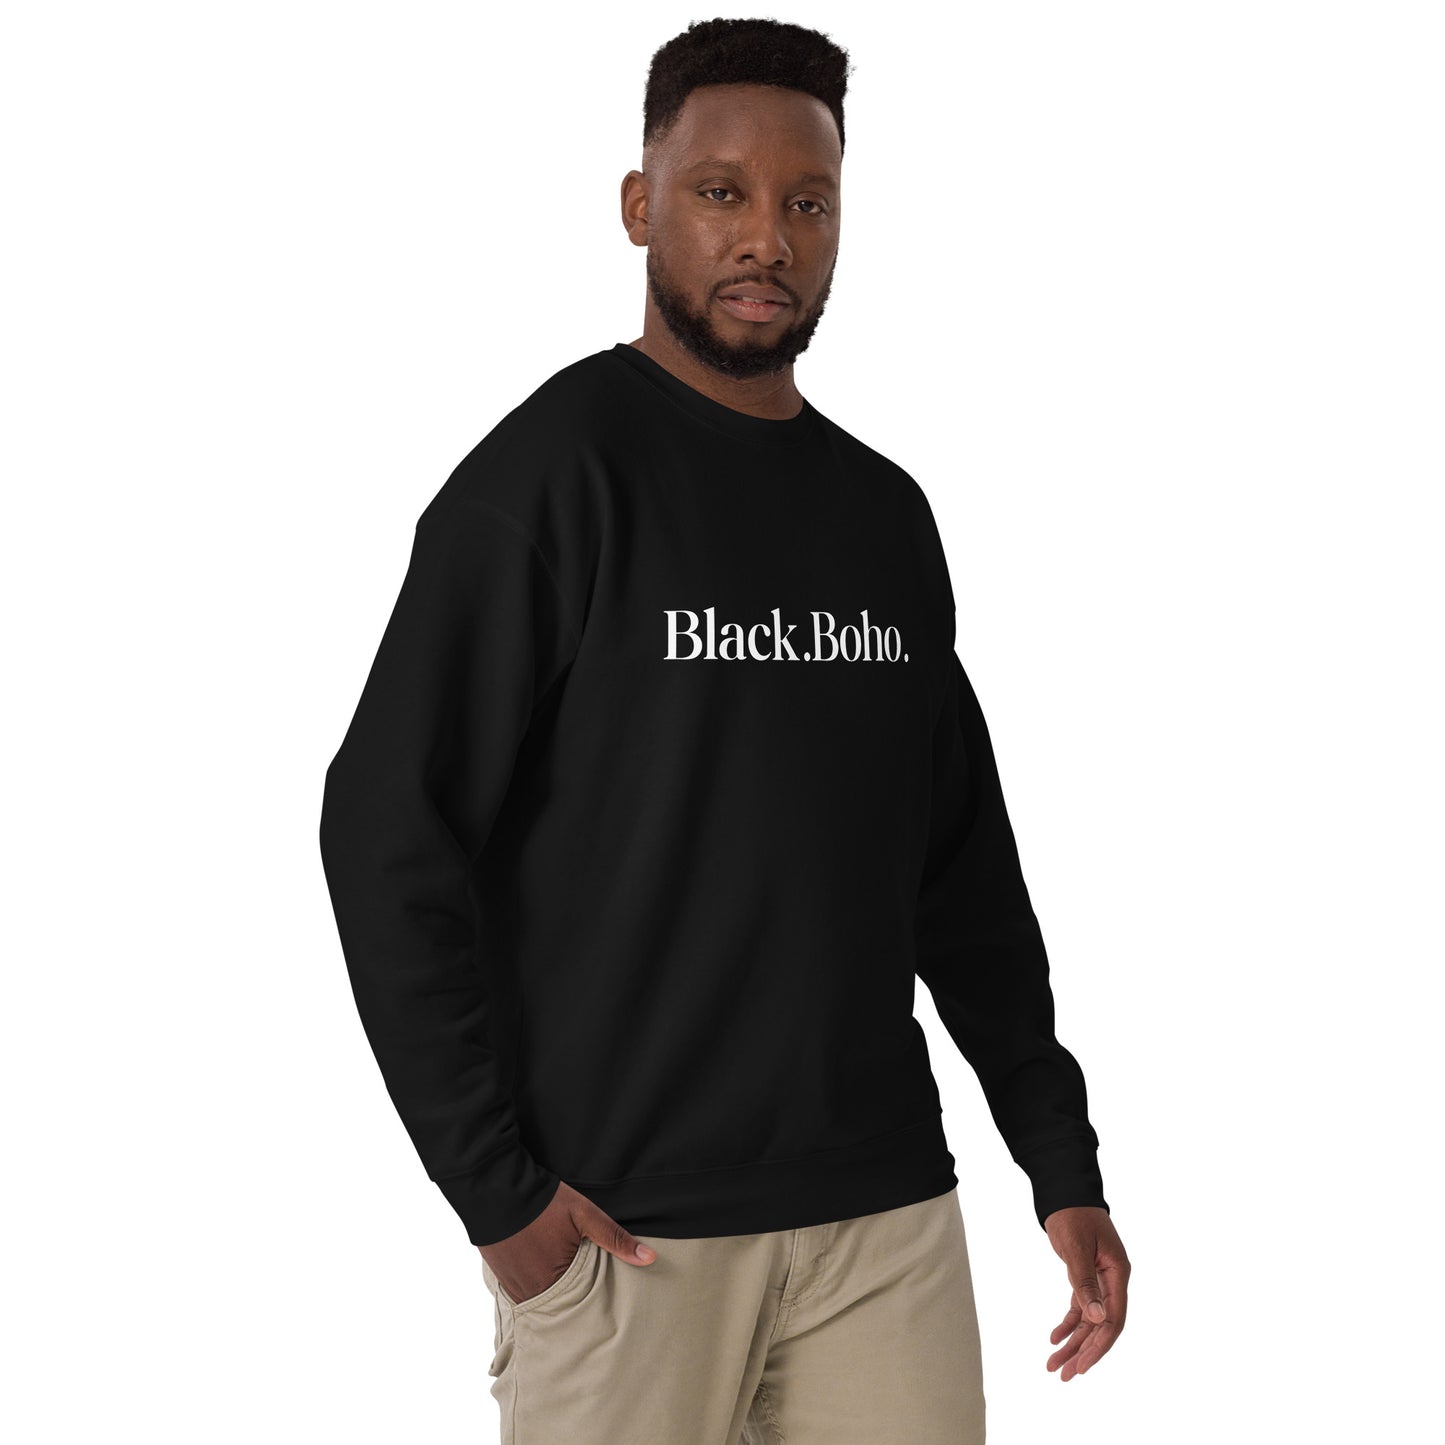 Black.Boho. Classic Unisex Premium Sweatshirt